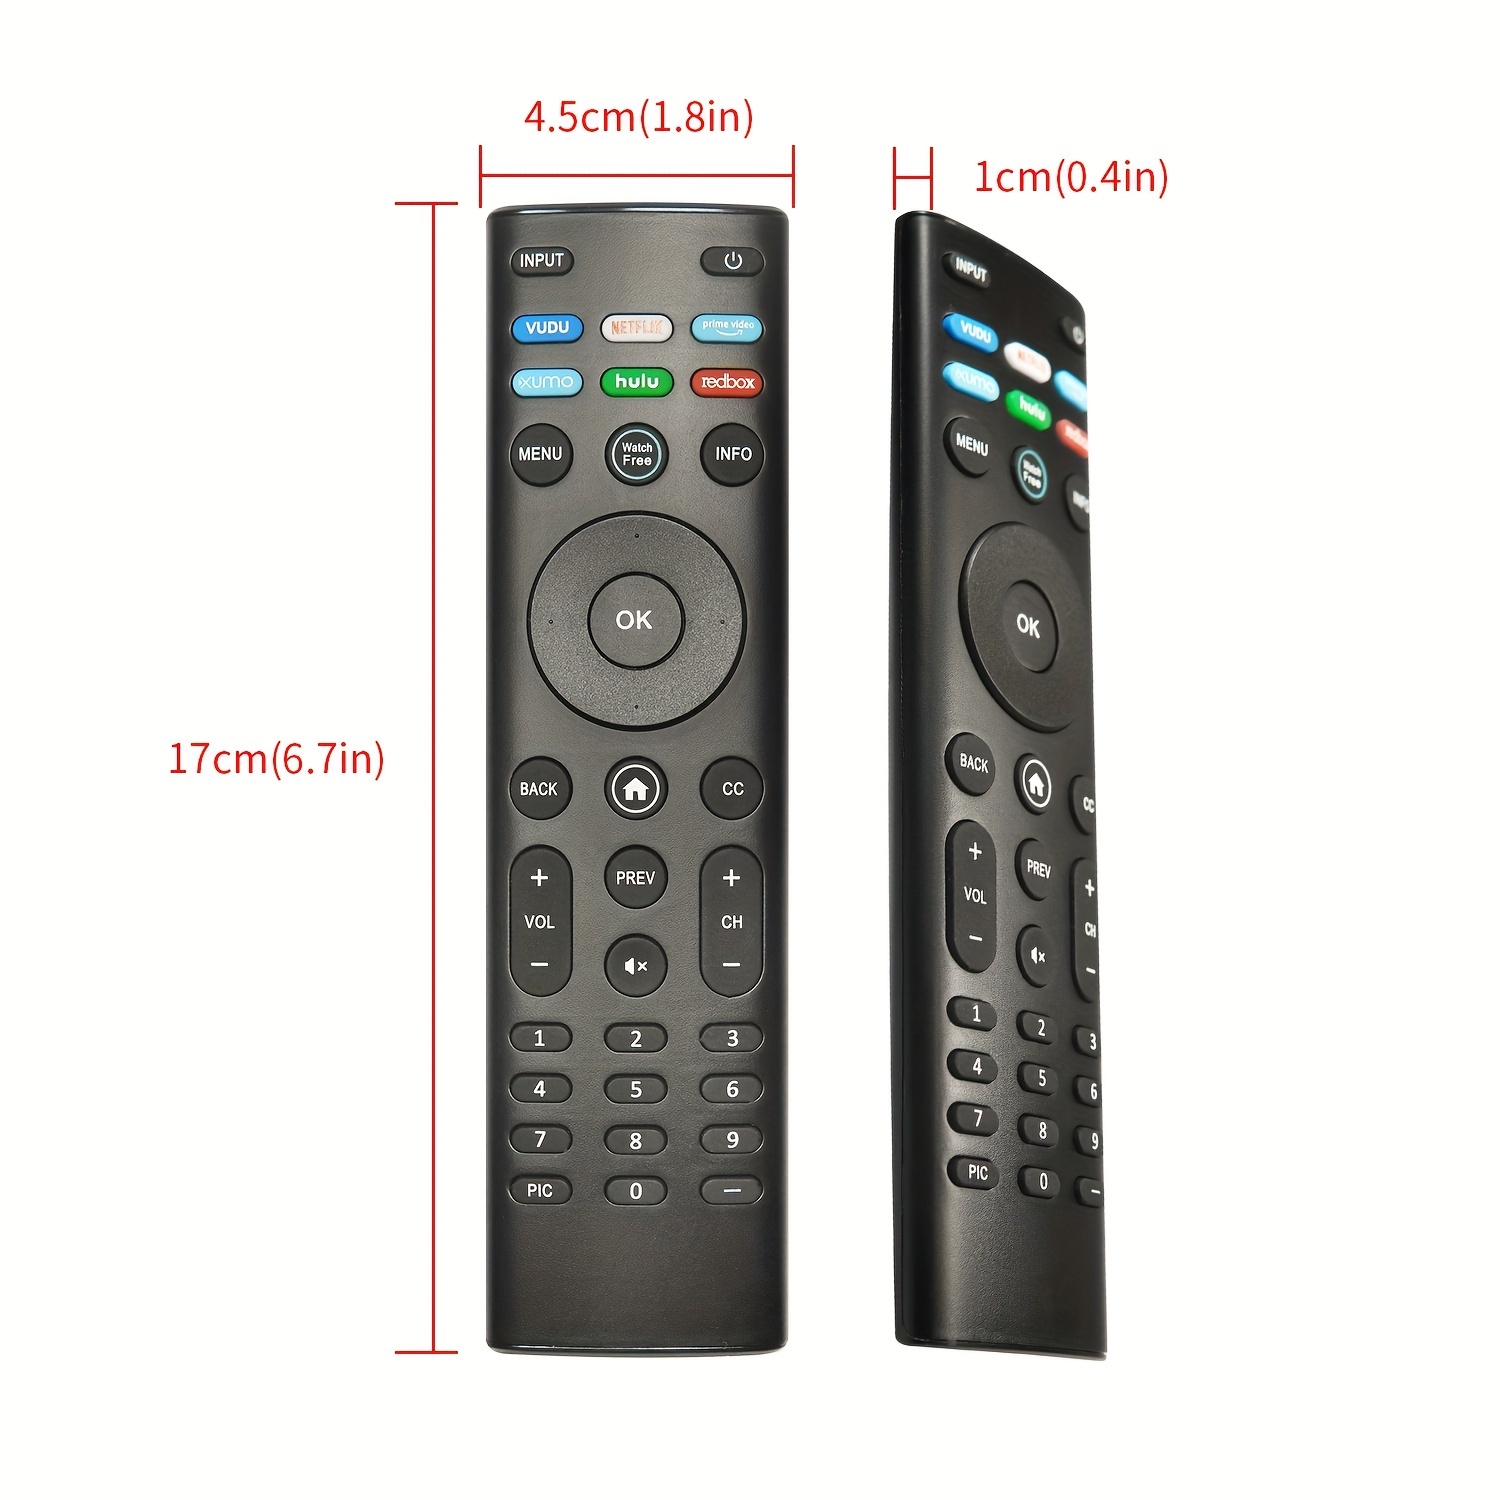 XRT136 Replace Remote Control fit for VIZIO Smart TV D50x-G9 D65x-G4  D55x-G1 D40f-G9 D43f-F1 D70-F3 V505-G9 D32h-F1 D24h-G9 E70-F3 D43-F1  V705-G3